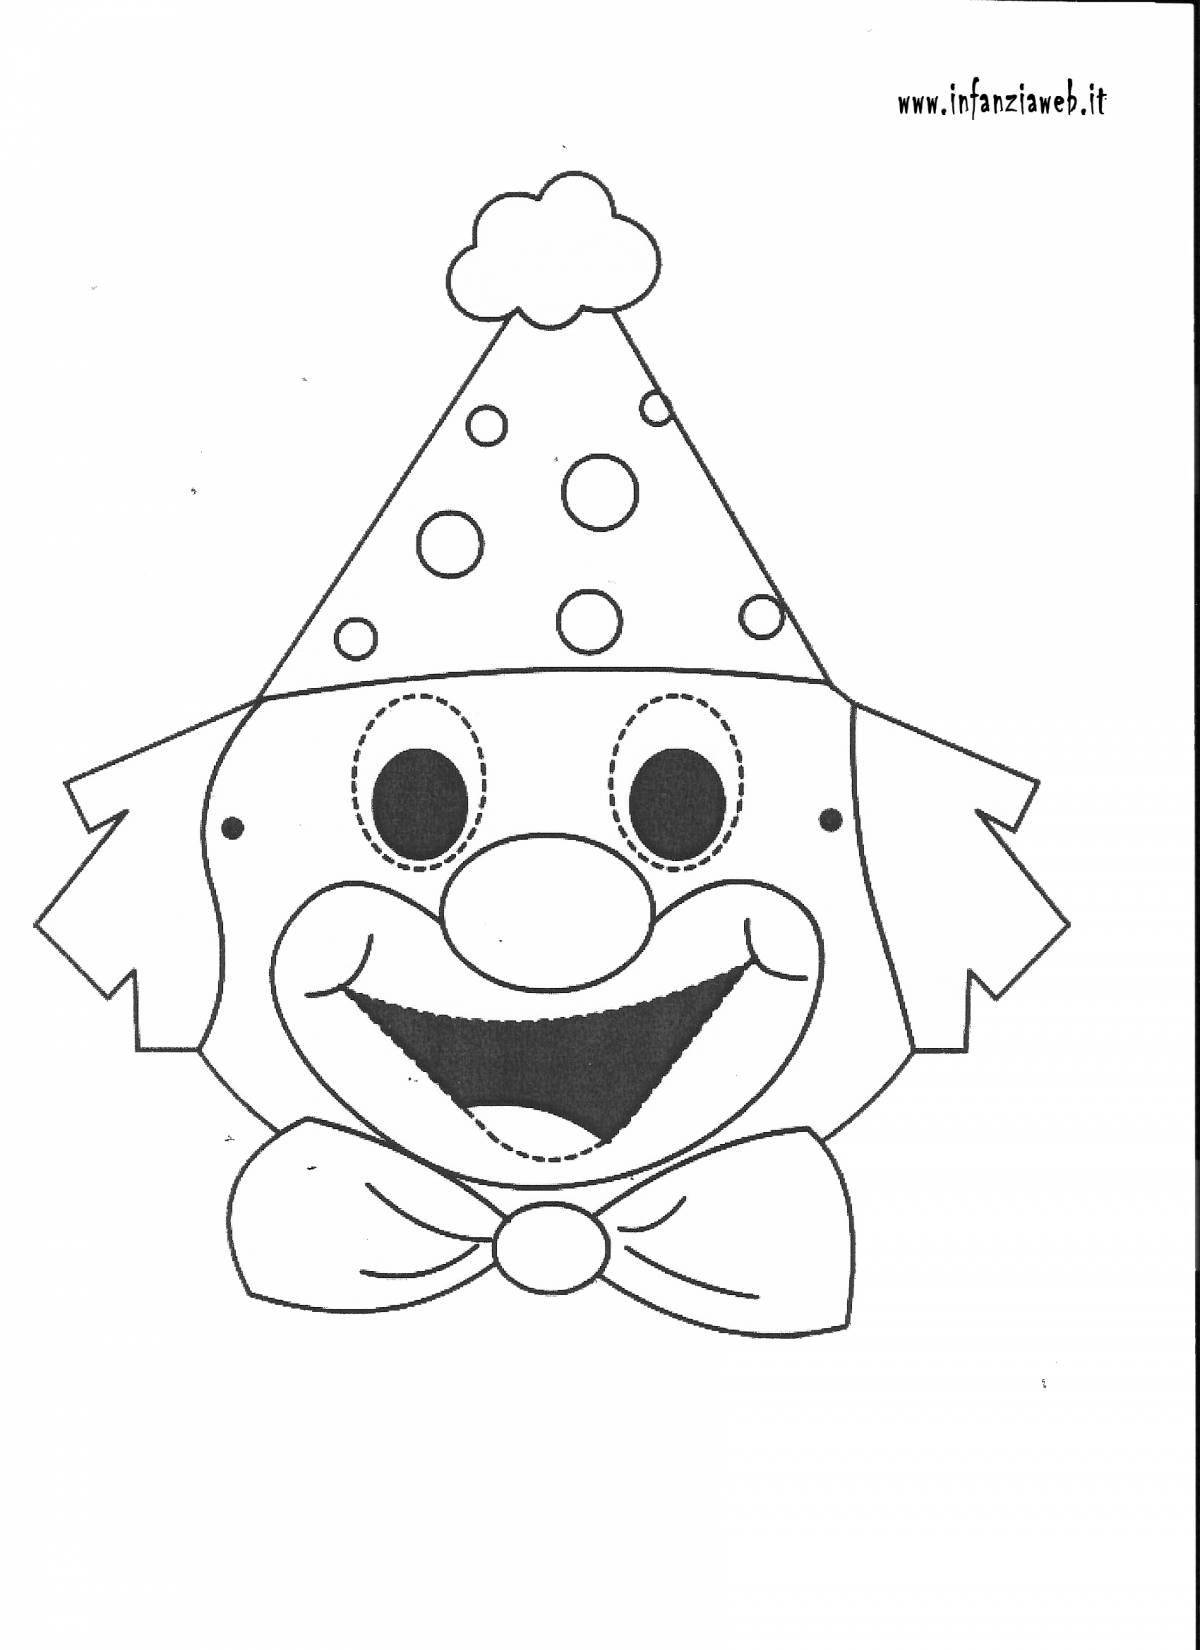 Сказочная страница раскраски лица клоуна для детей